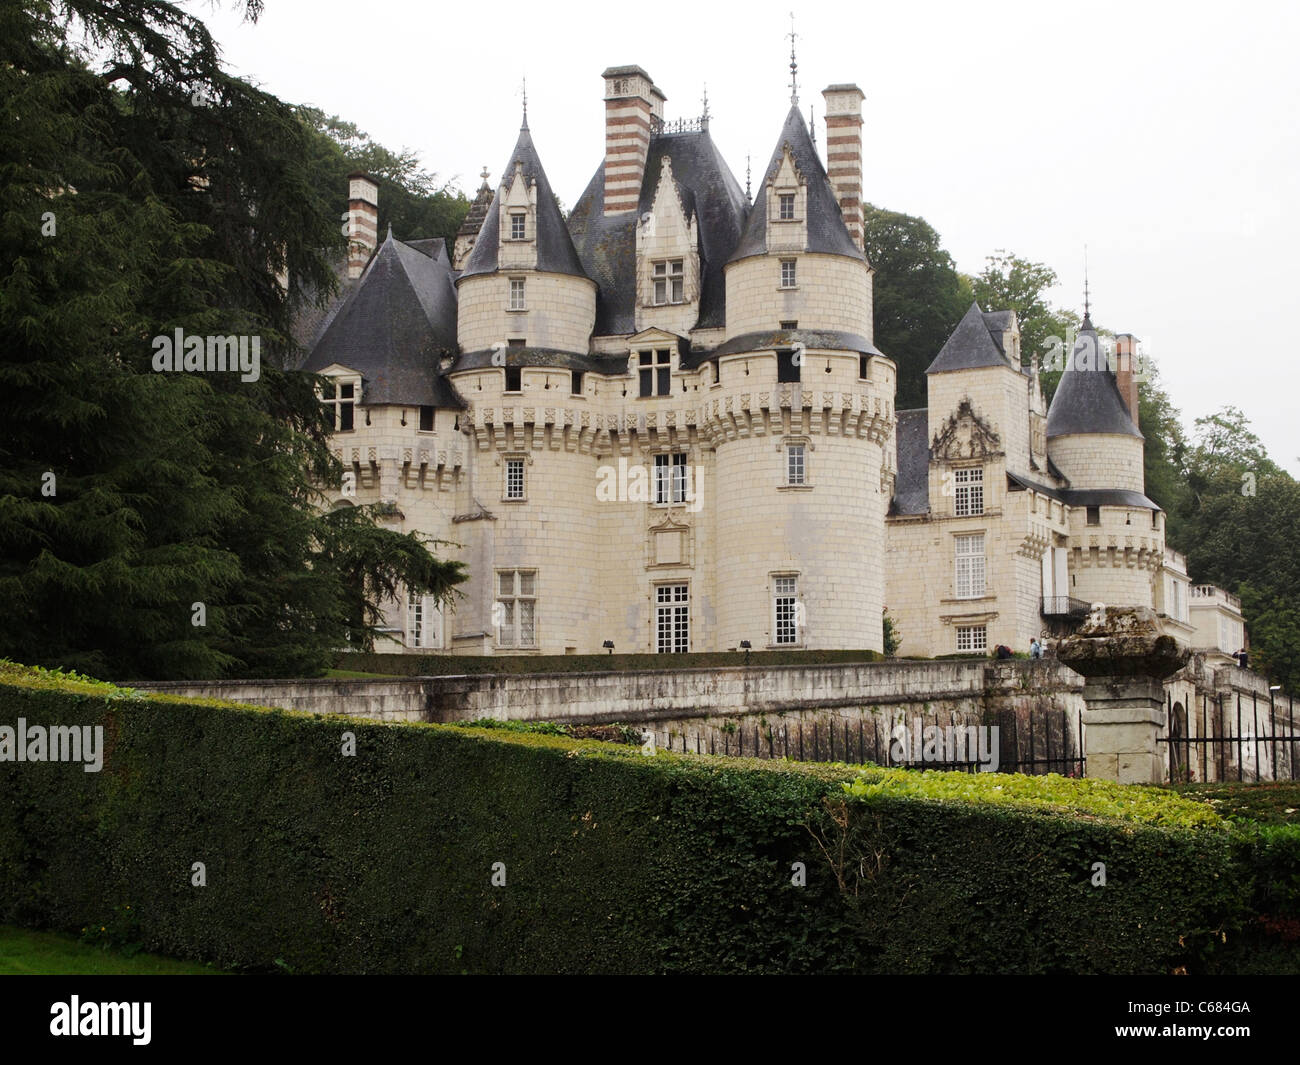 Chateau de Ussé, Loire valley, France Stock Photo